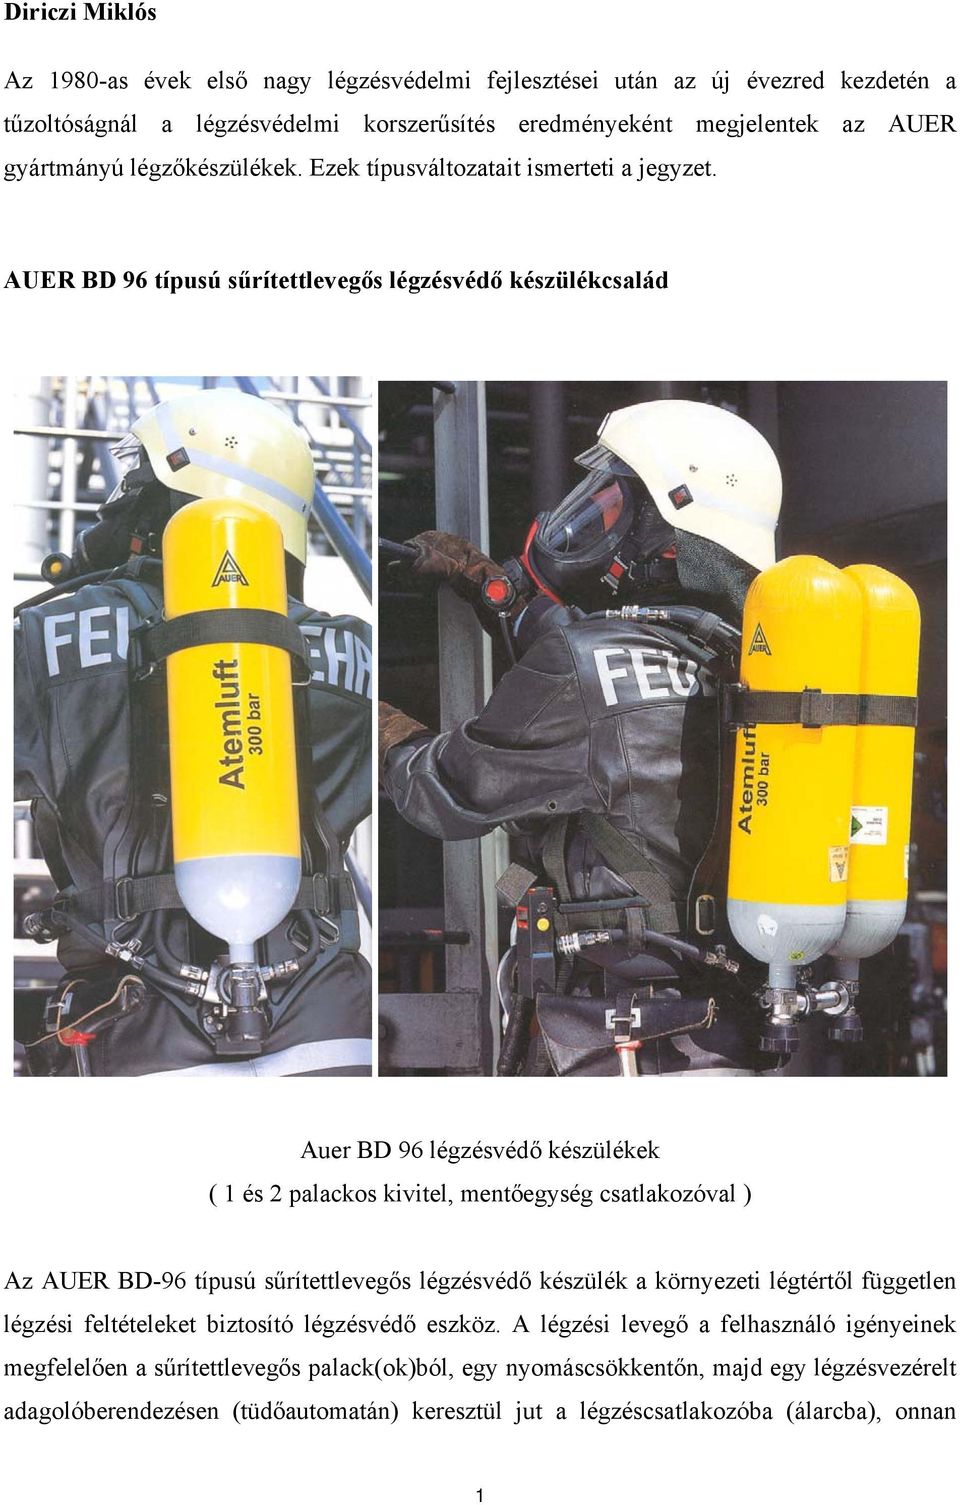 AUER BD 96 típusú sűrítettlevegős légzésvédő készülékcsalád Auer BD 96 légzésvédő készülékek ( 1 és 2 palackos kivitel, mentőegység csatlakozóval ) Az AUER BD-96 típusú sűrítettlevegős